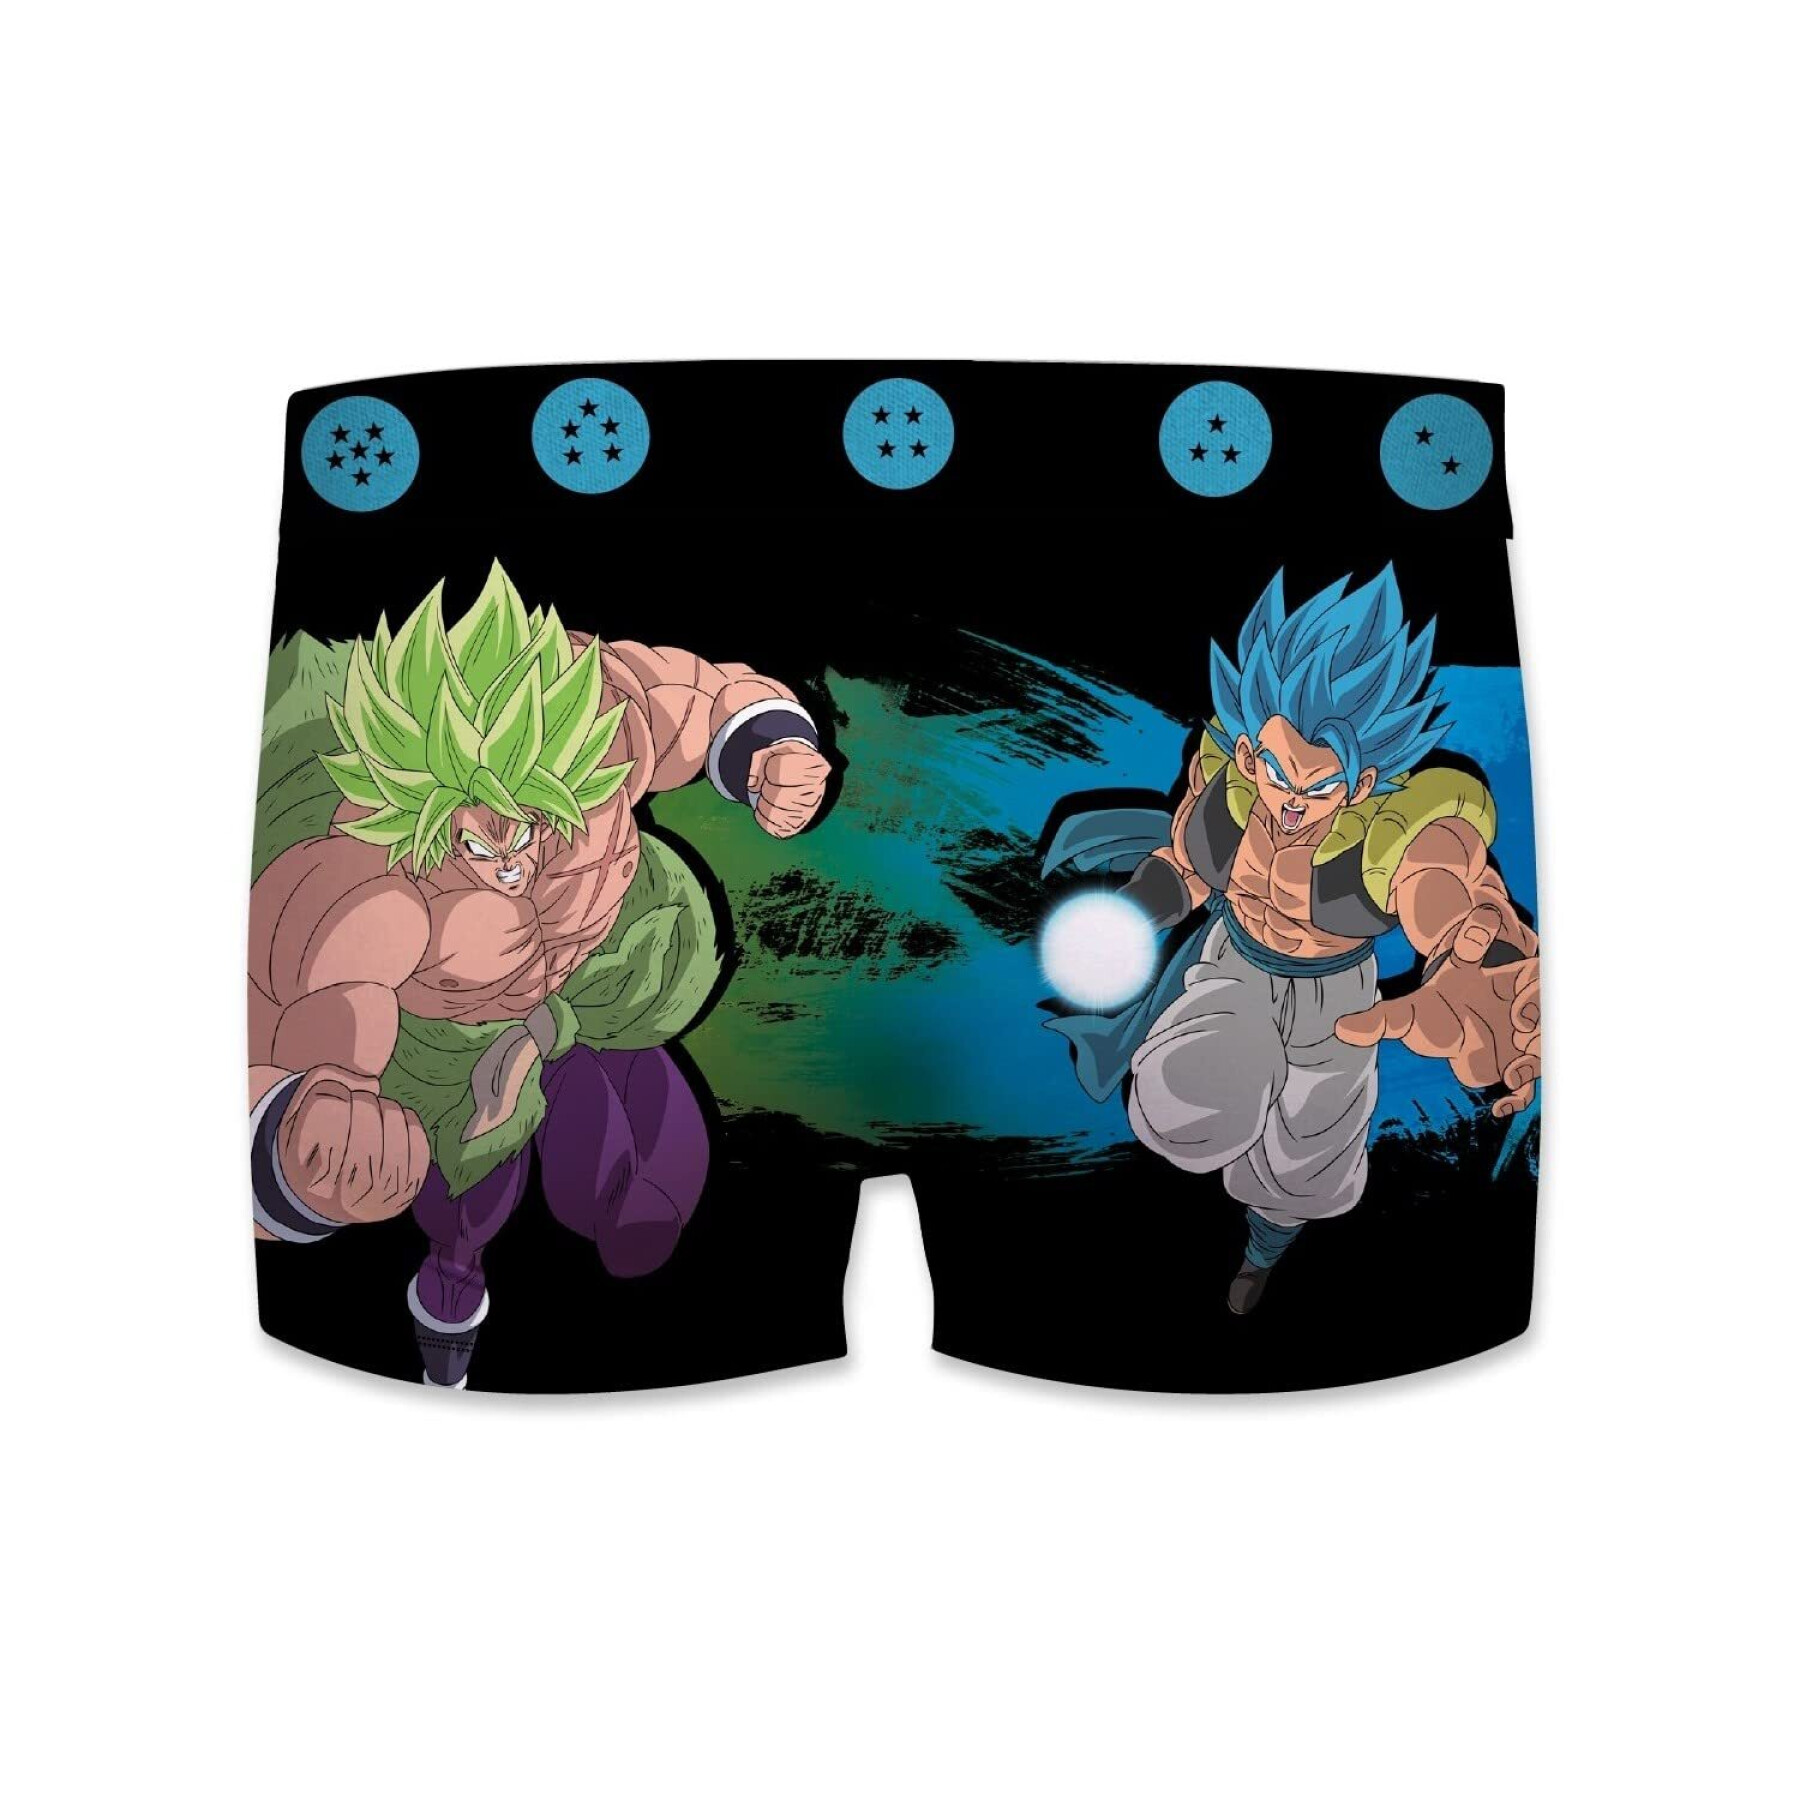 Set van 2 boxers voor kinderen Freegun Dragon ball super broly